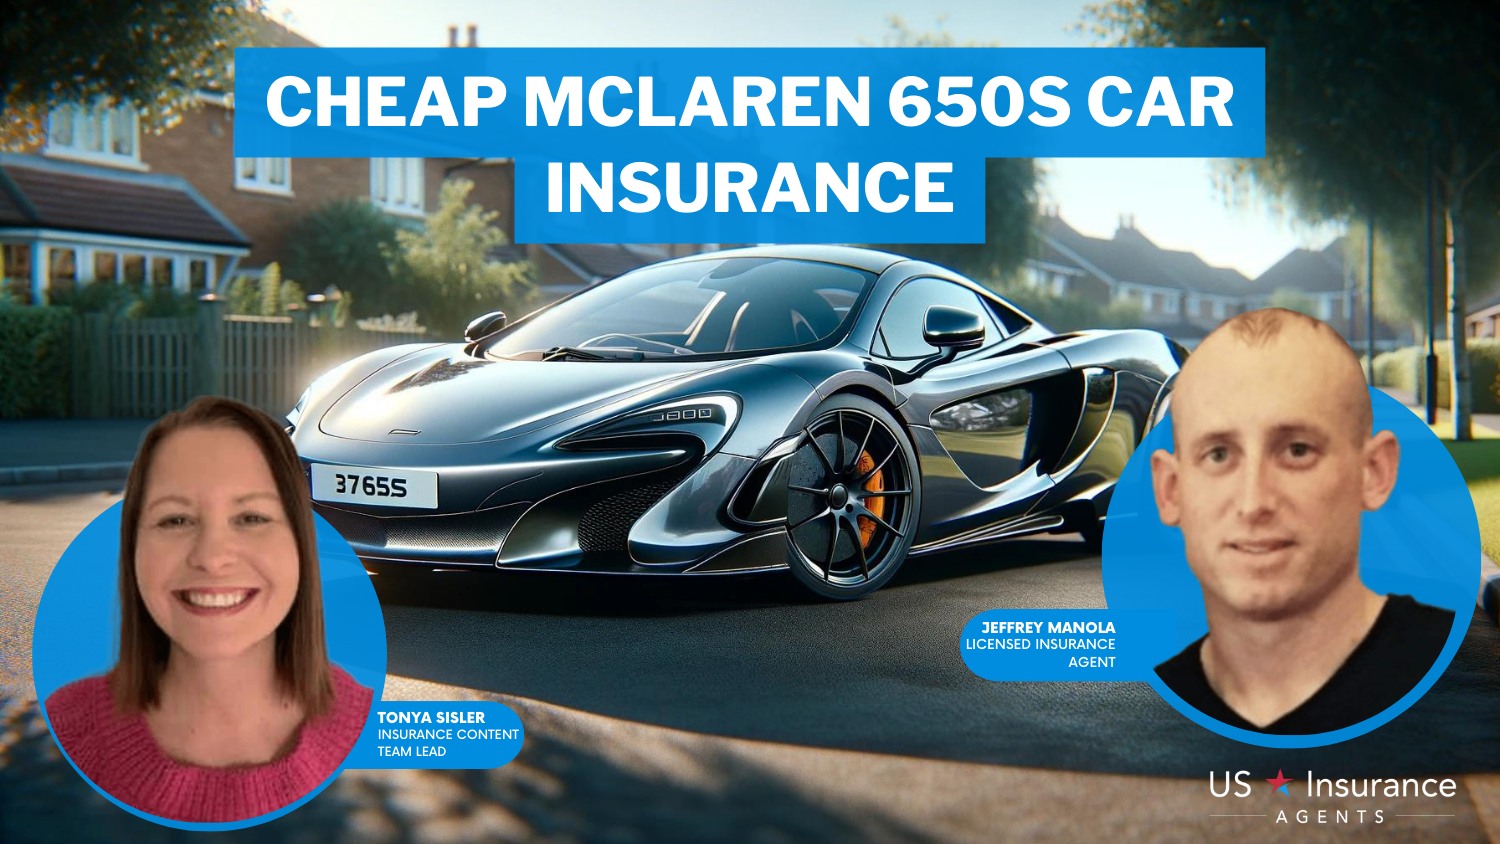 Cheap McLaren 650S Car Insurance: State Farm, USAA, and Progressive